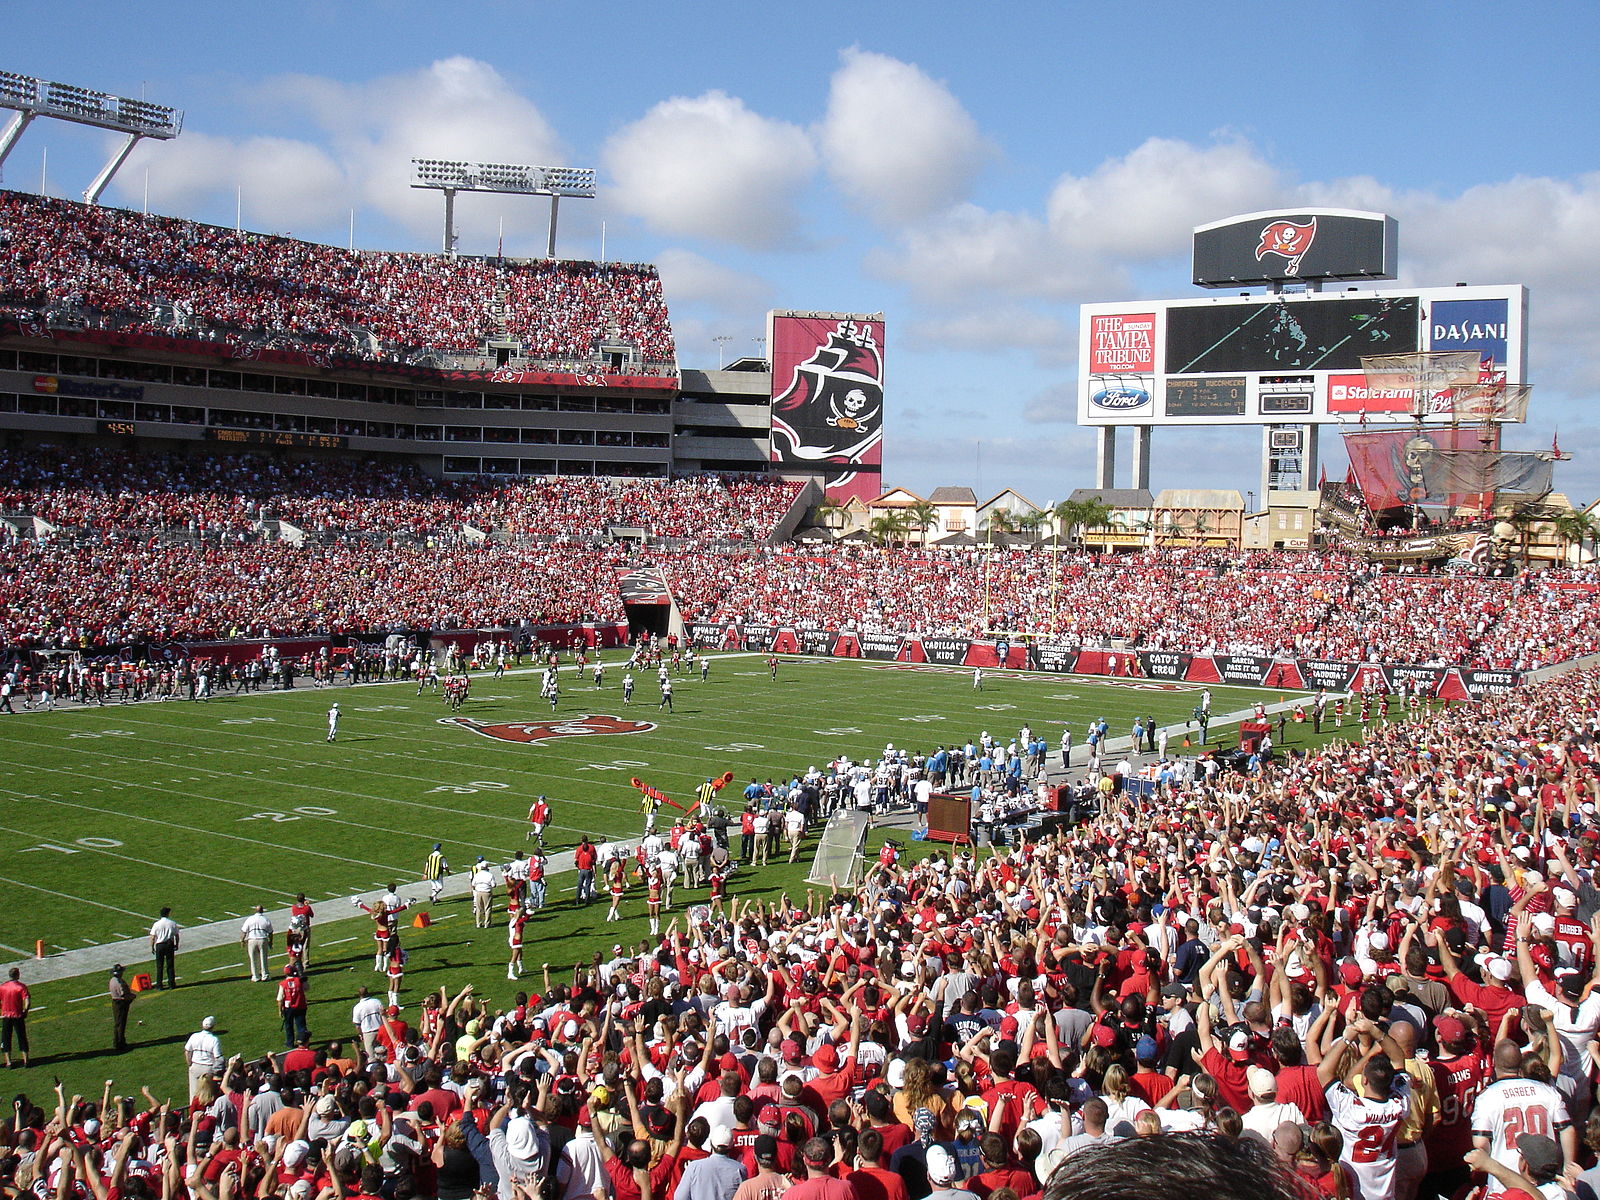 Raymond James Stadium, em Tampa, em foto de 2019 (crédito: wikimedia commons)